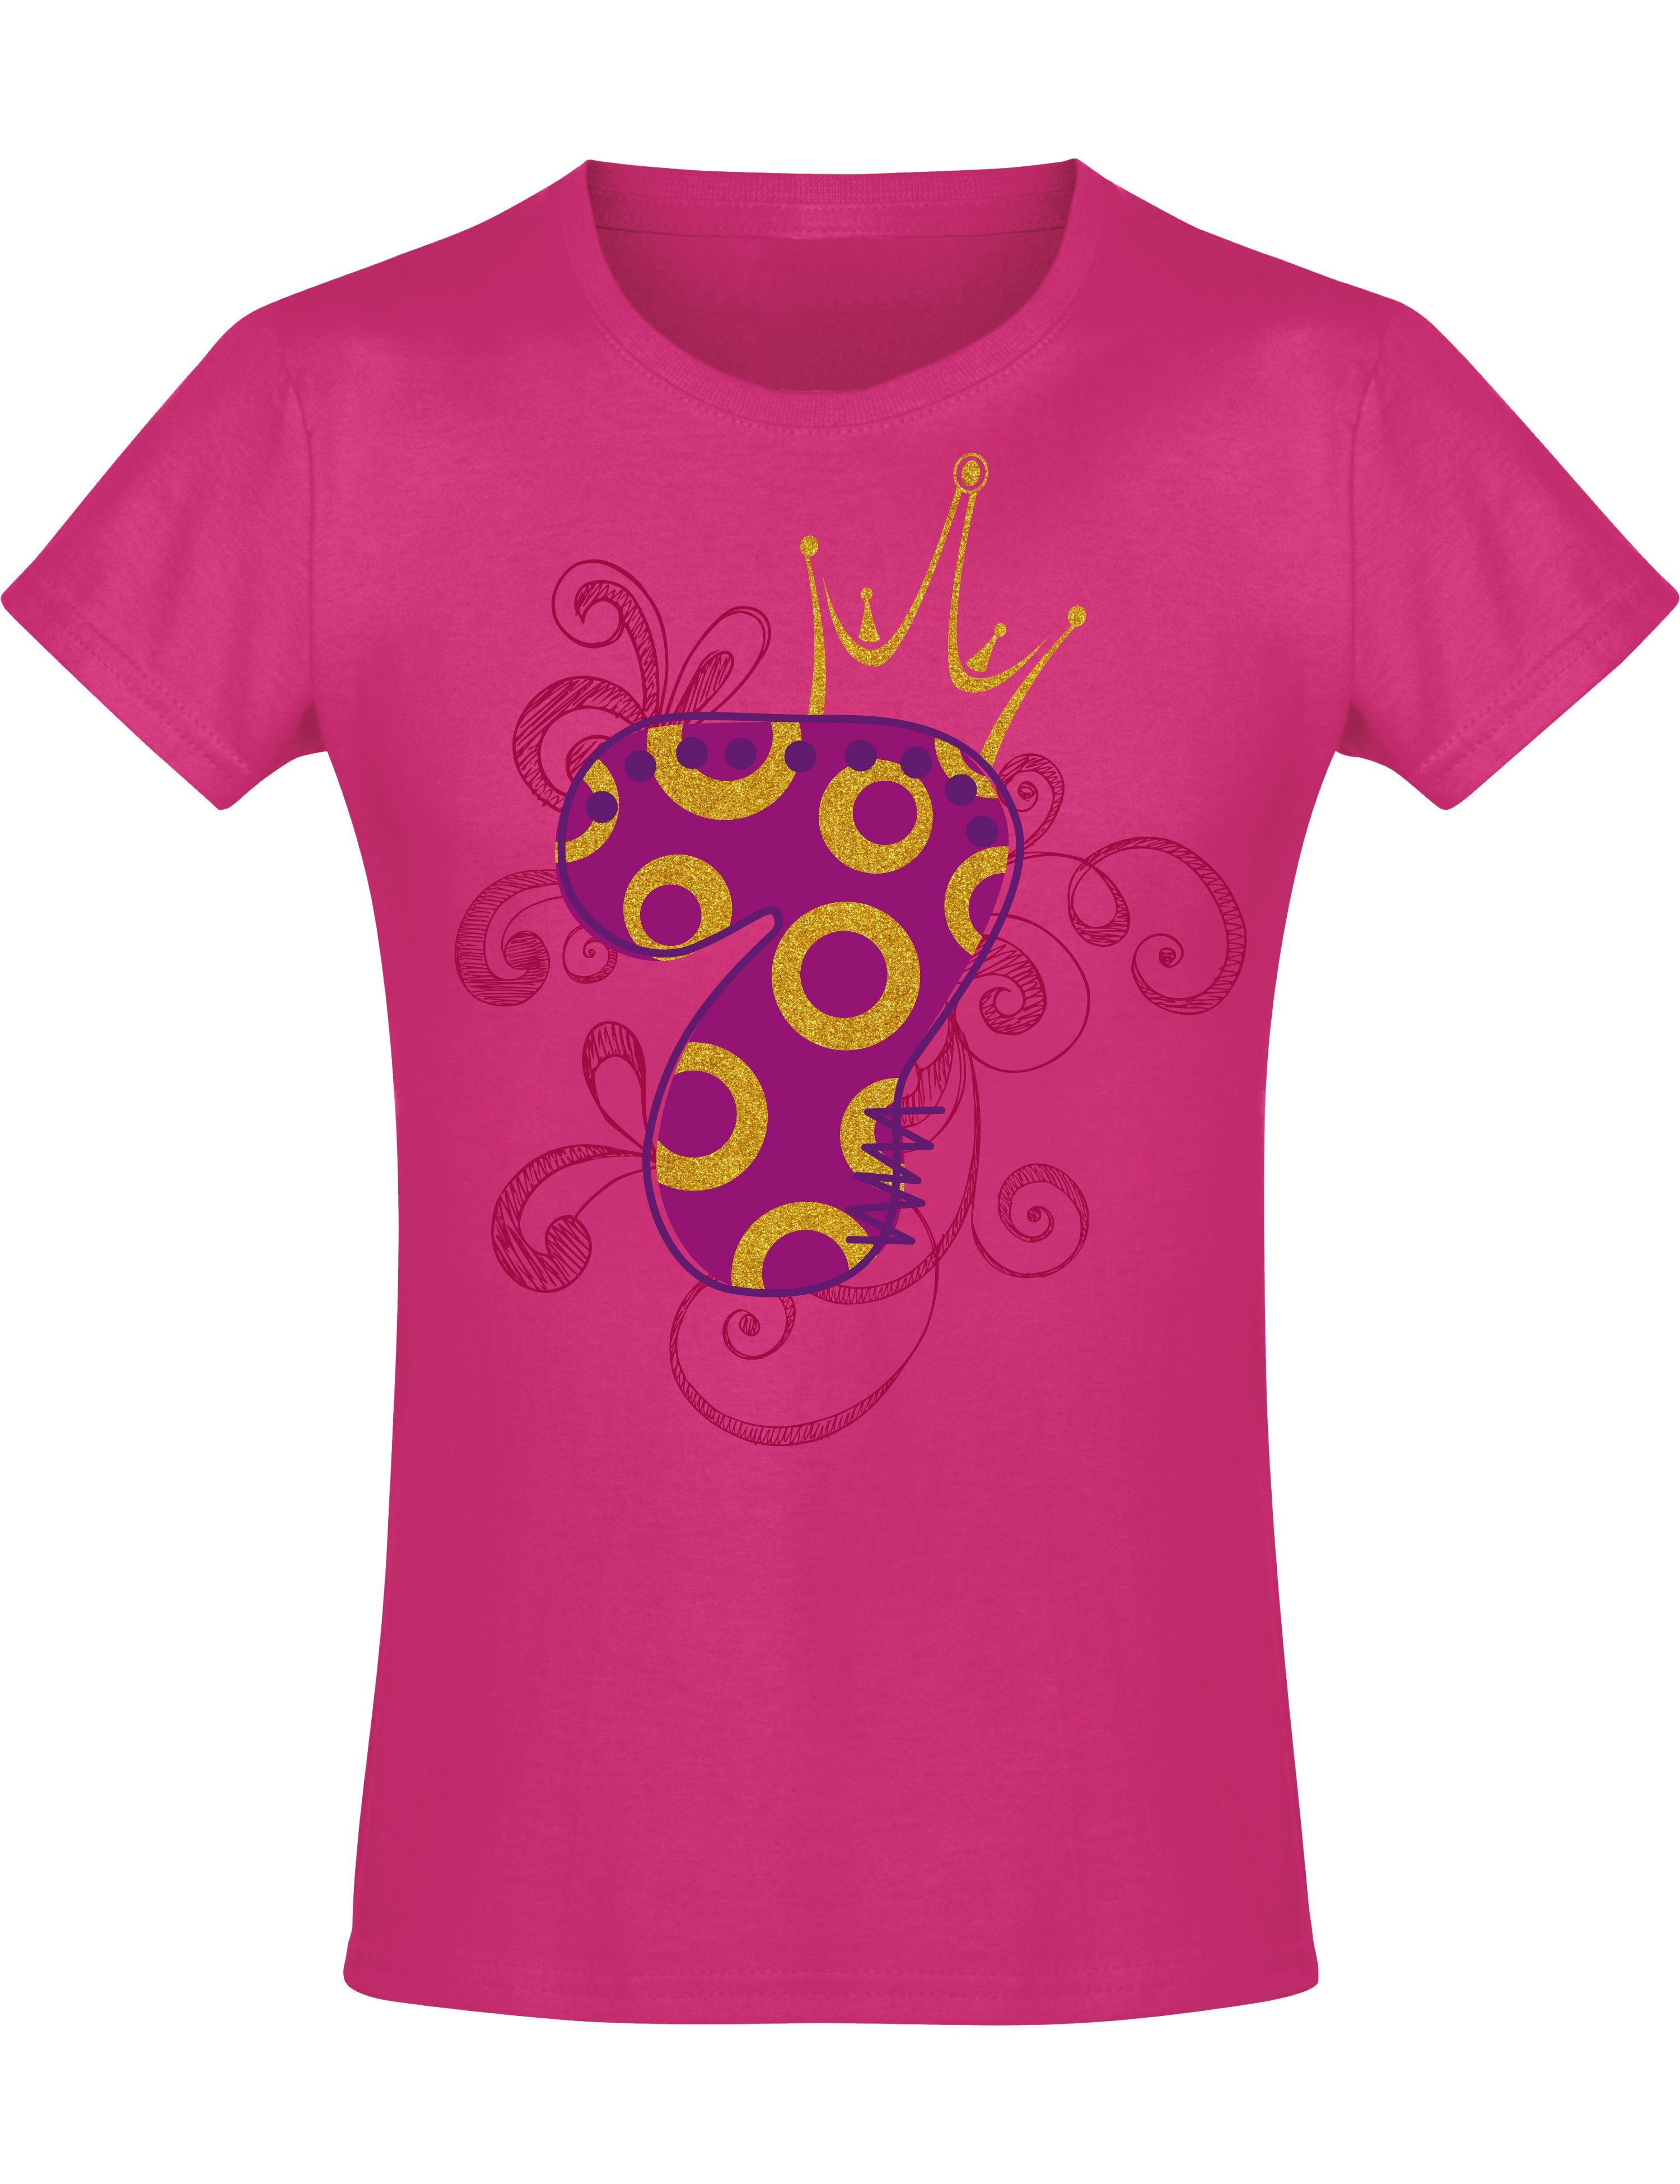 Siebdruck, Krone, aus Print-Shirt Mädchen : Baddery Geburstagsgeschenk mit für 7 hochwertiger Jahre Baumwolle